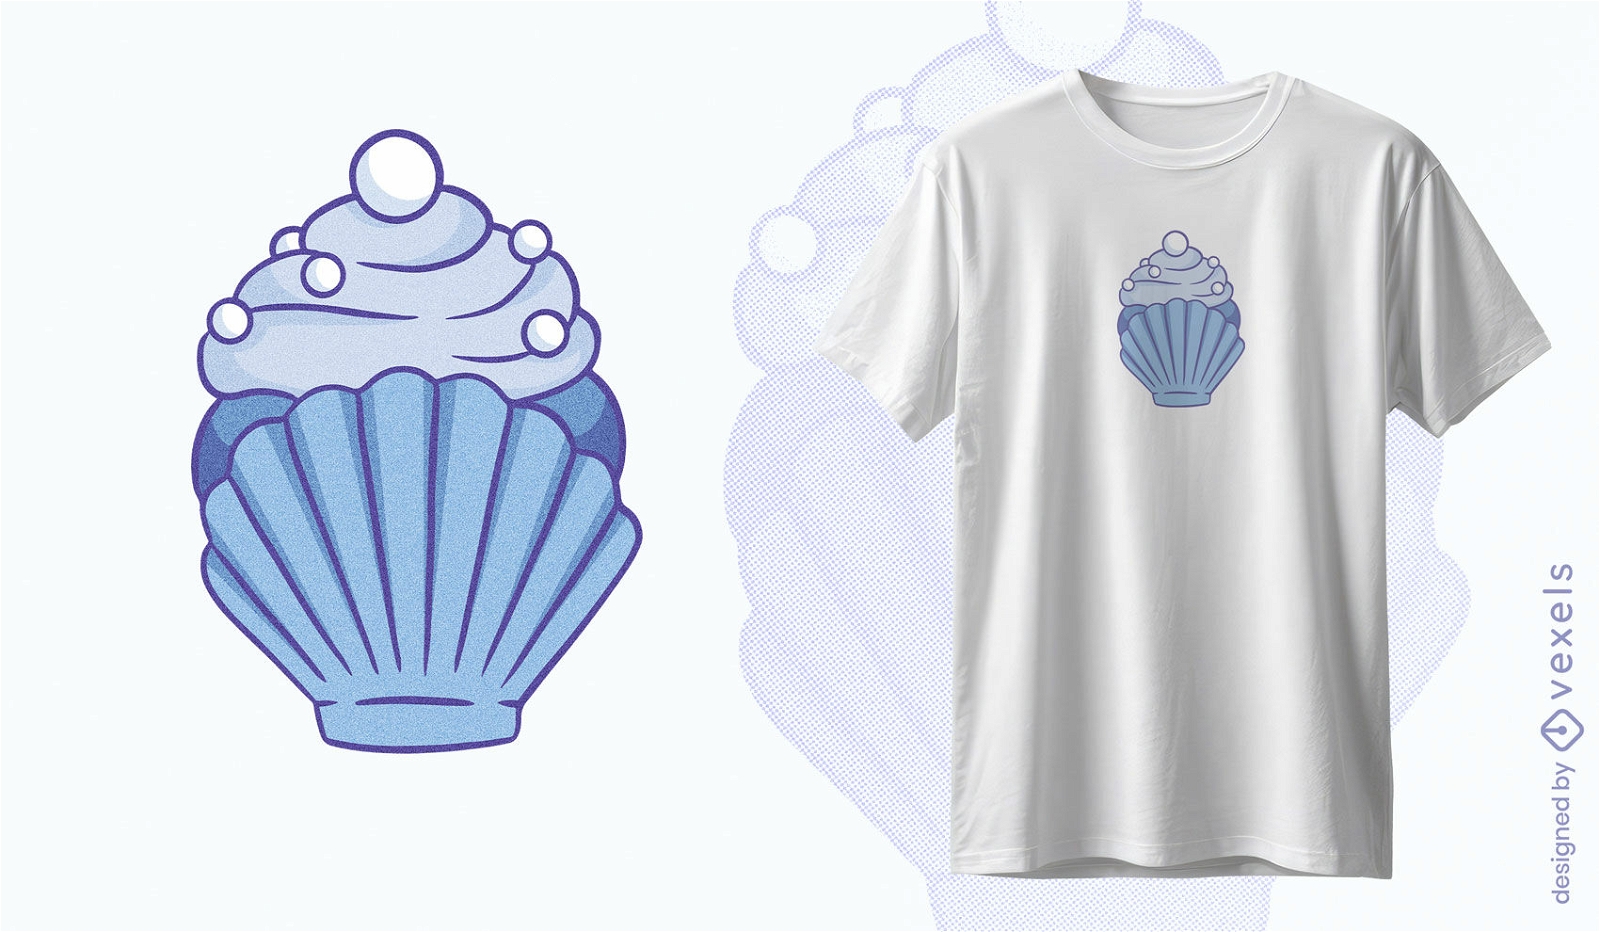 Muschel-Cupcake-T-Shirt-Design